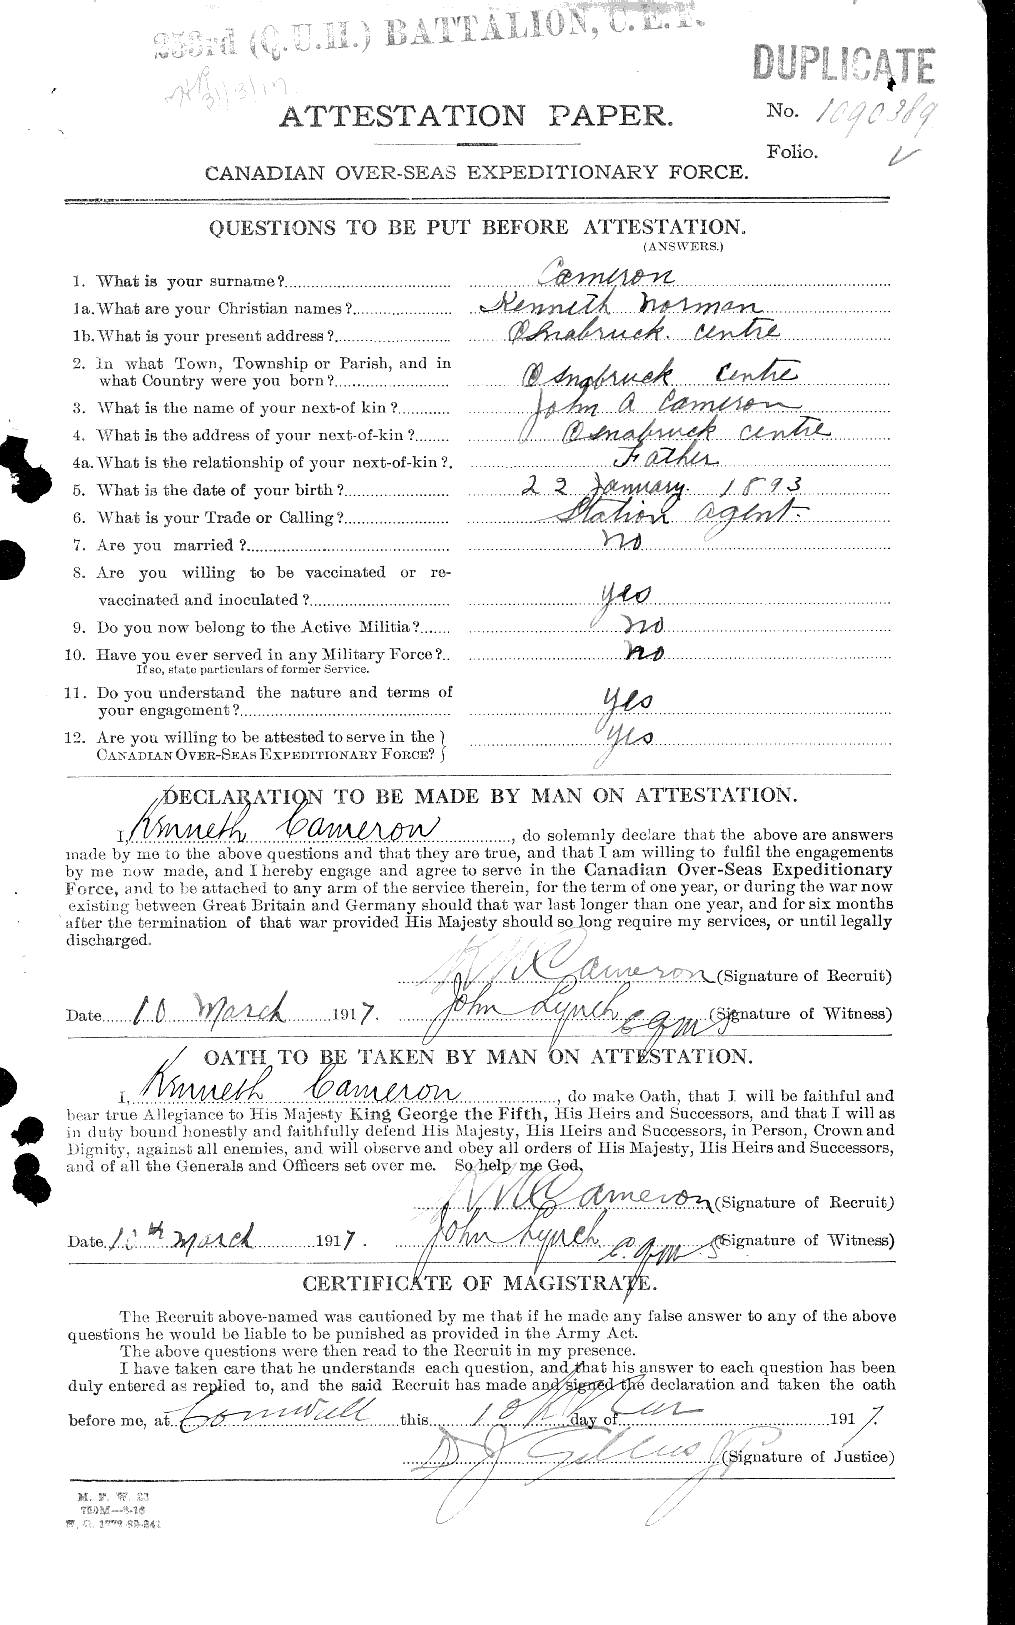 Dossiers du Personnel de la Première Guerre mondiale - CEC 002377a